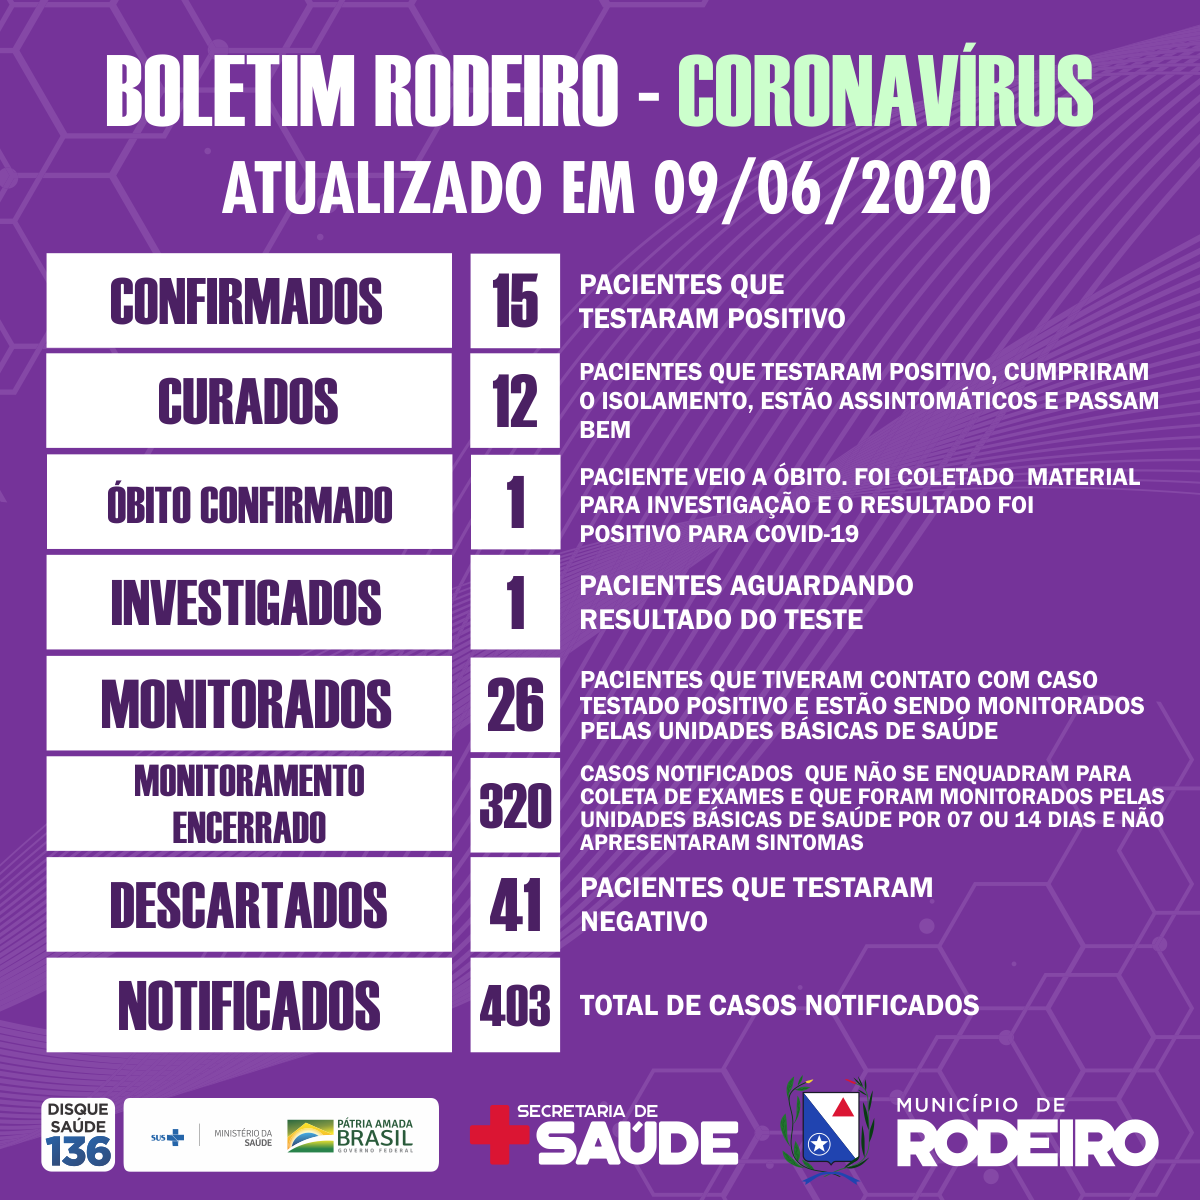 Boletim epidemiológico do Município de Rodeiro coronavírus, atualizado em 09/06/2020⠀